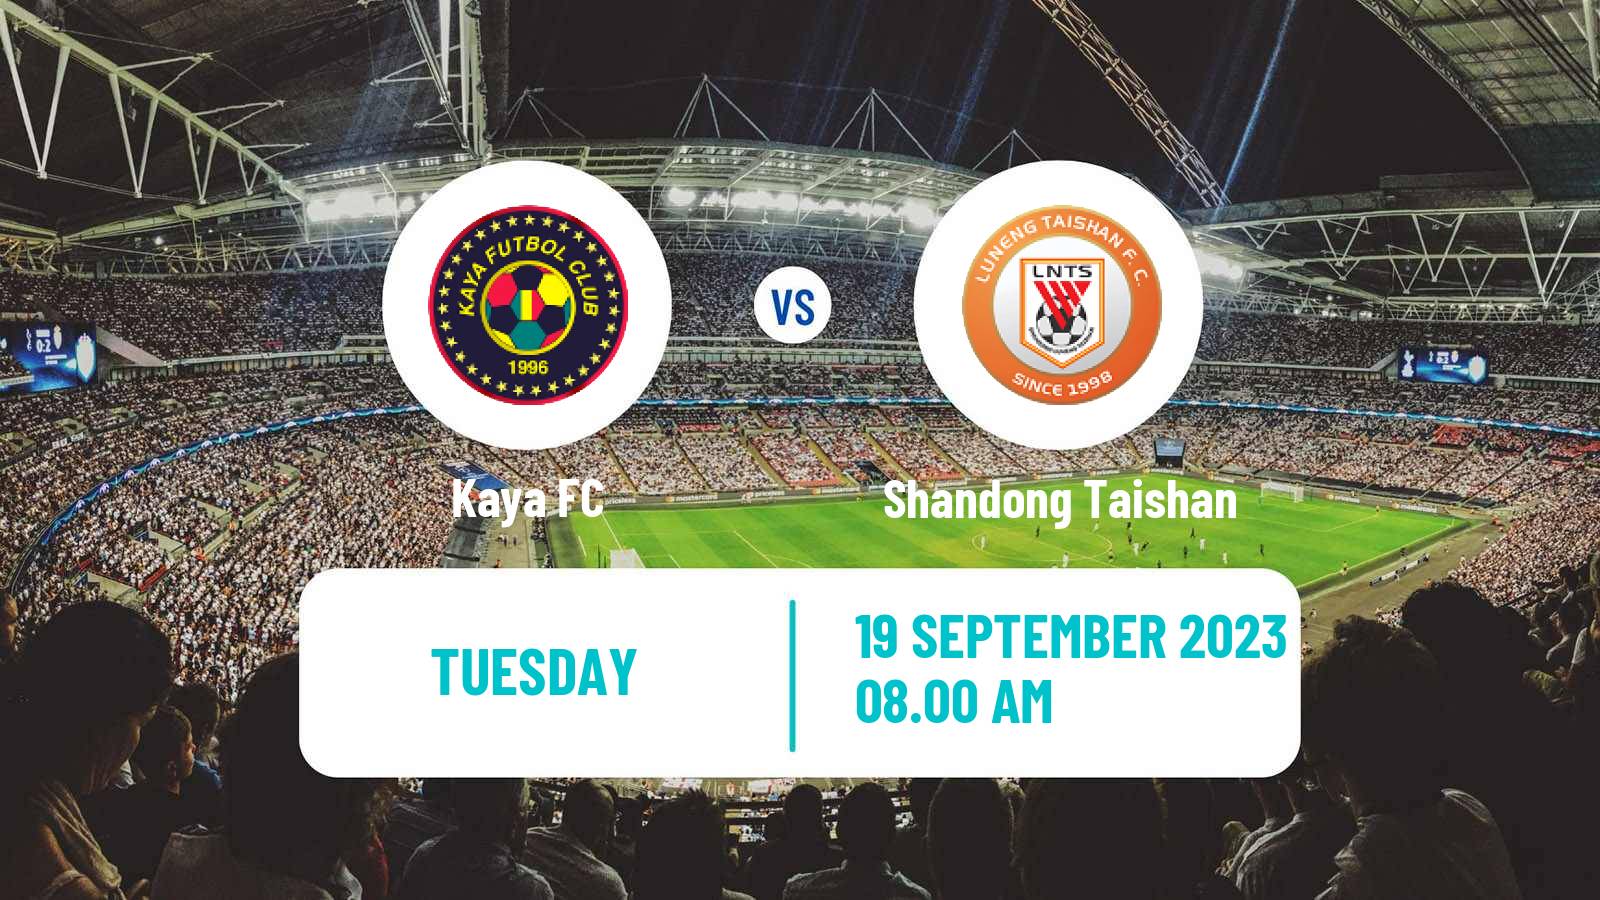 Soccer AFC Champions League Kaya - Shandong Taishan